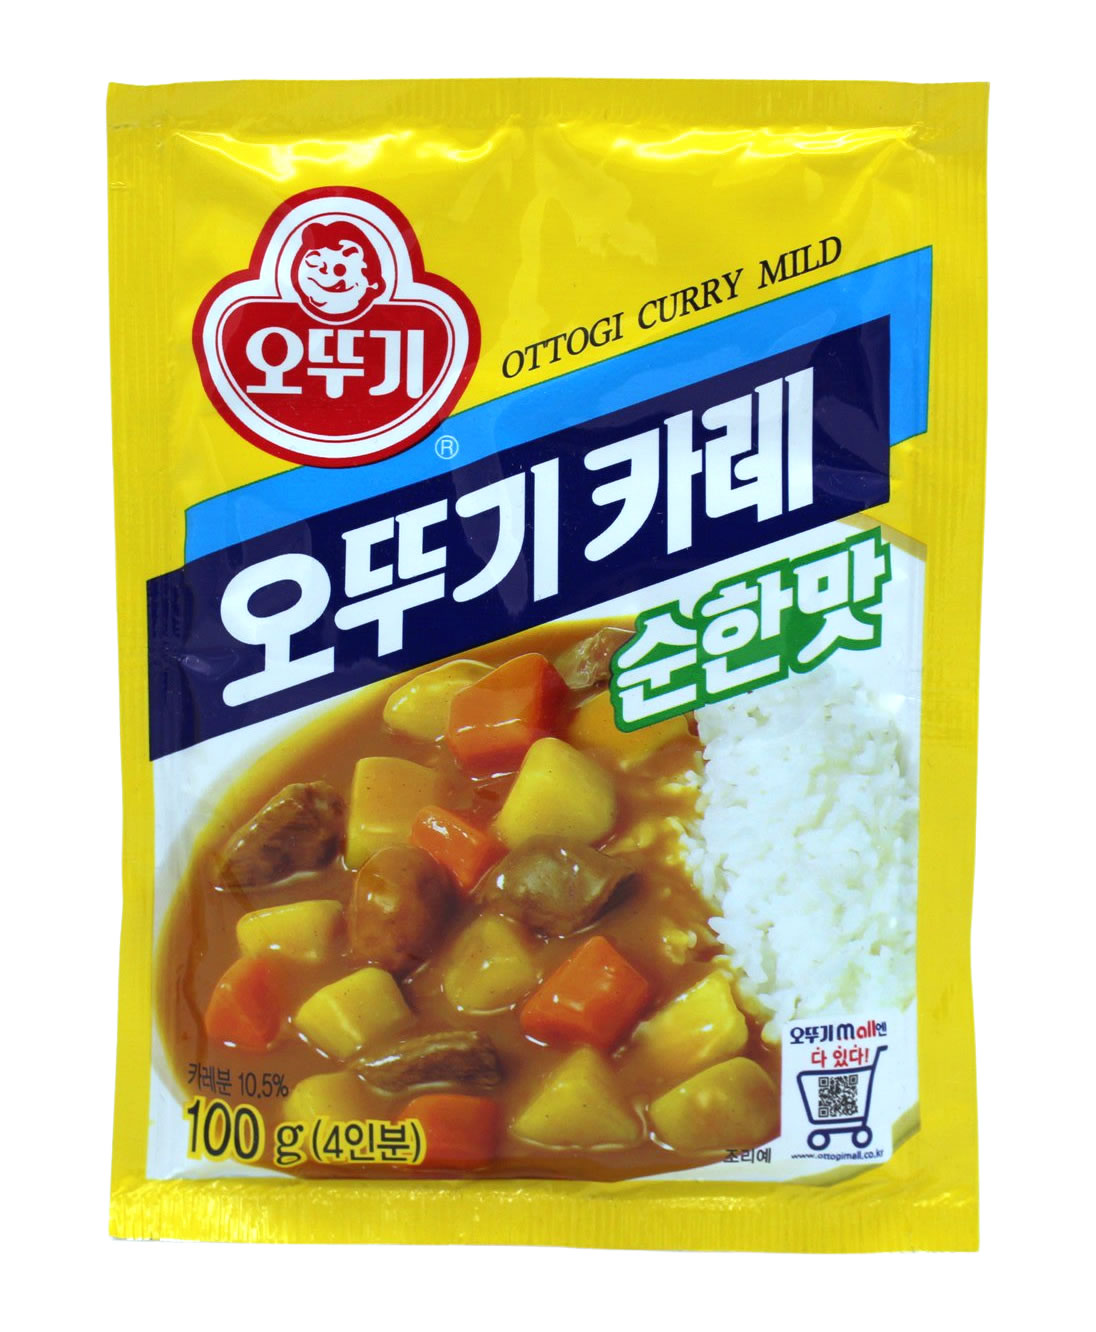 Ottogi Curry Pulver mild, 100 g